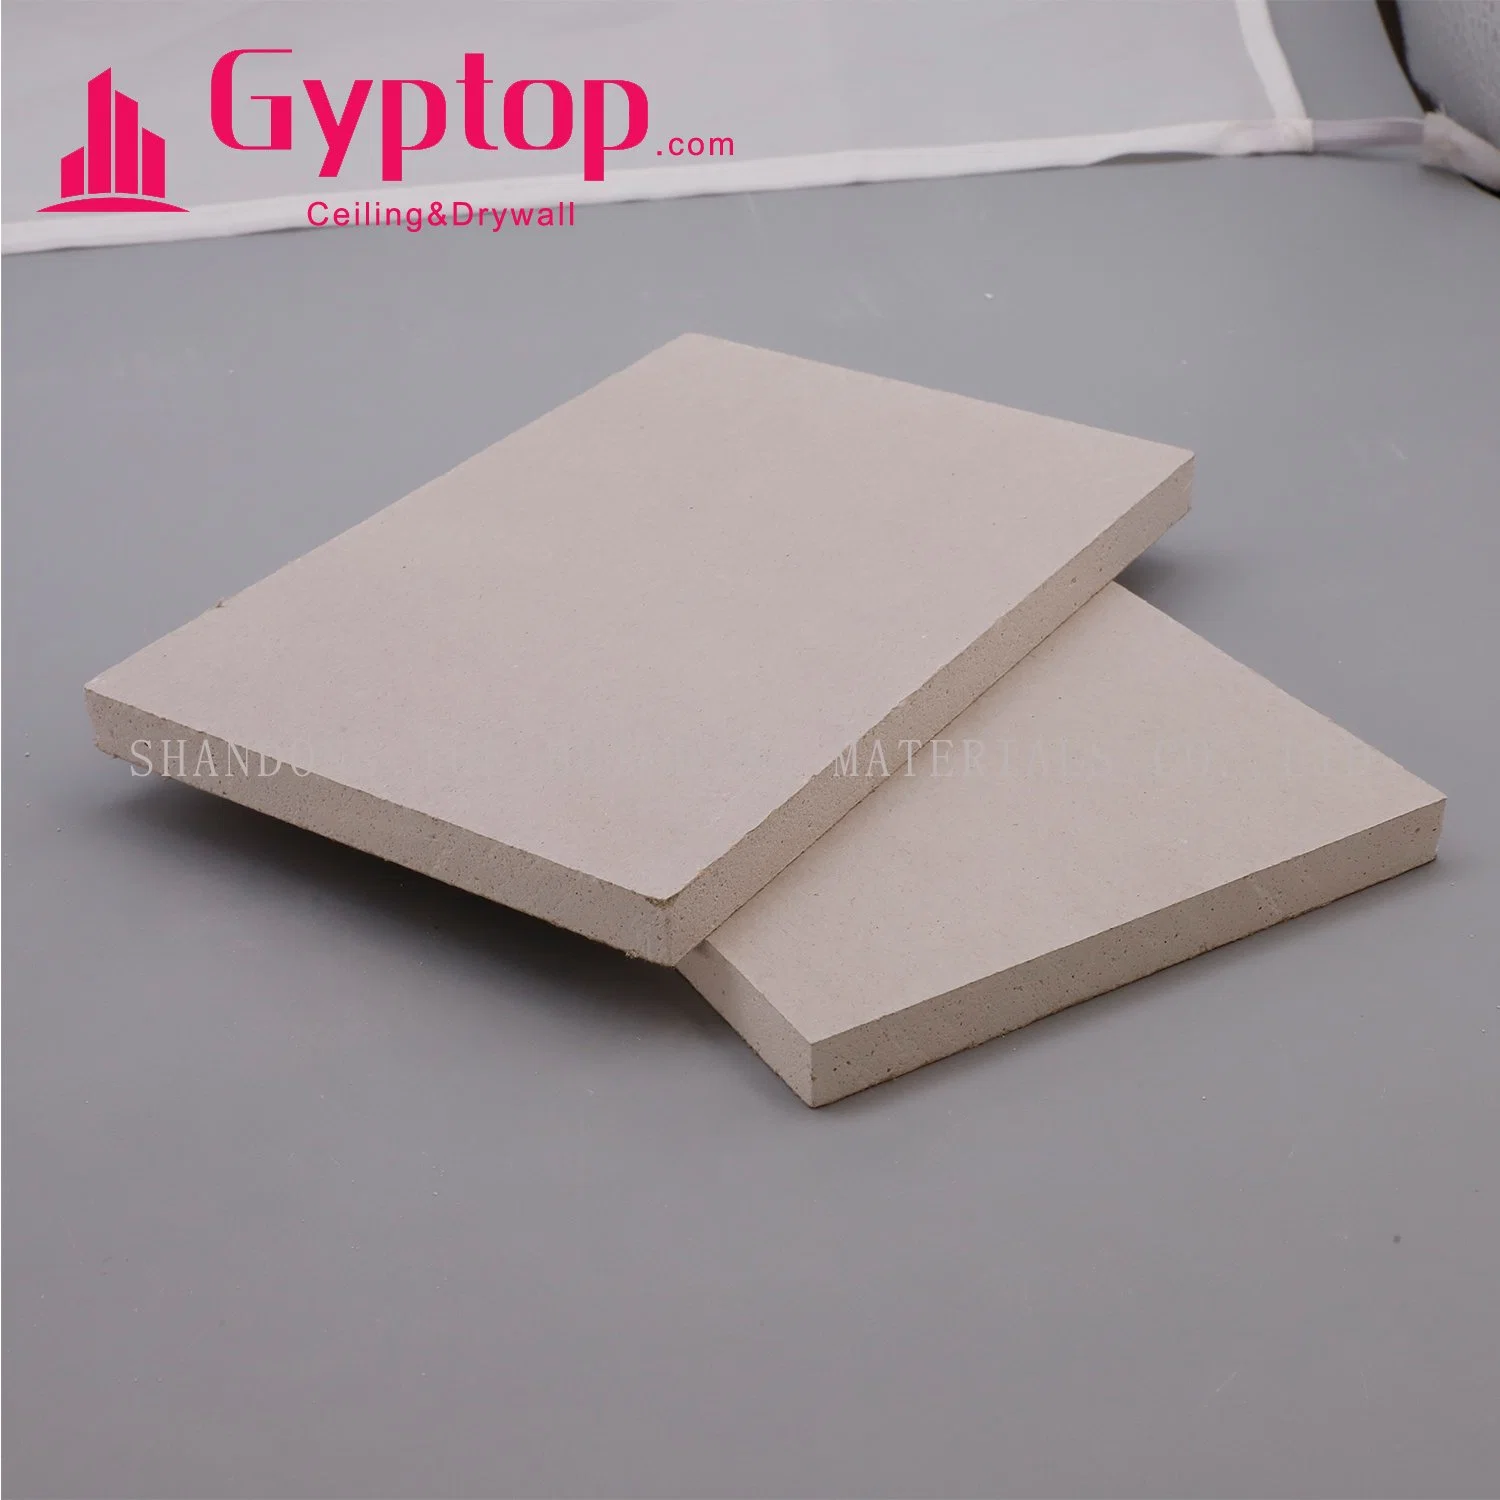 Plaque de plâtre standard/plaque de plâtre hydrofuge/plafond en plâtre